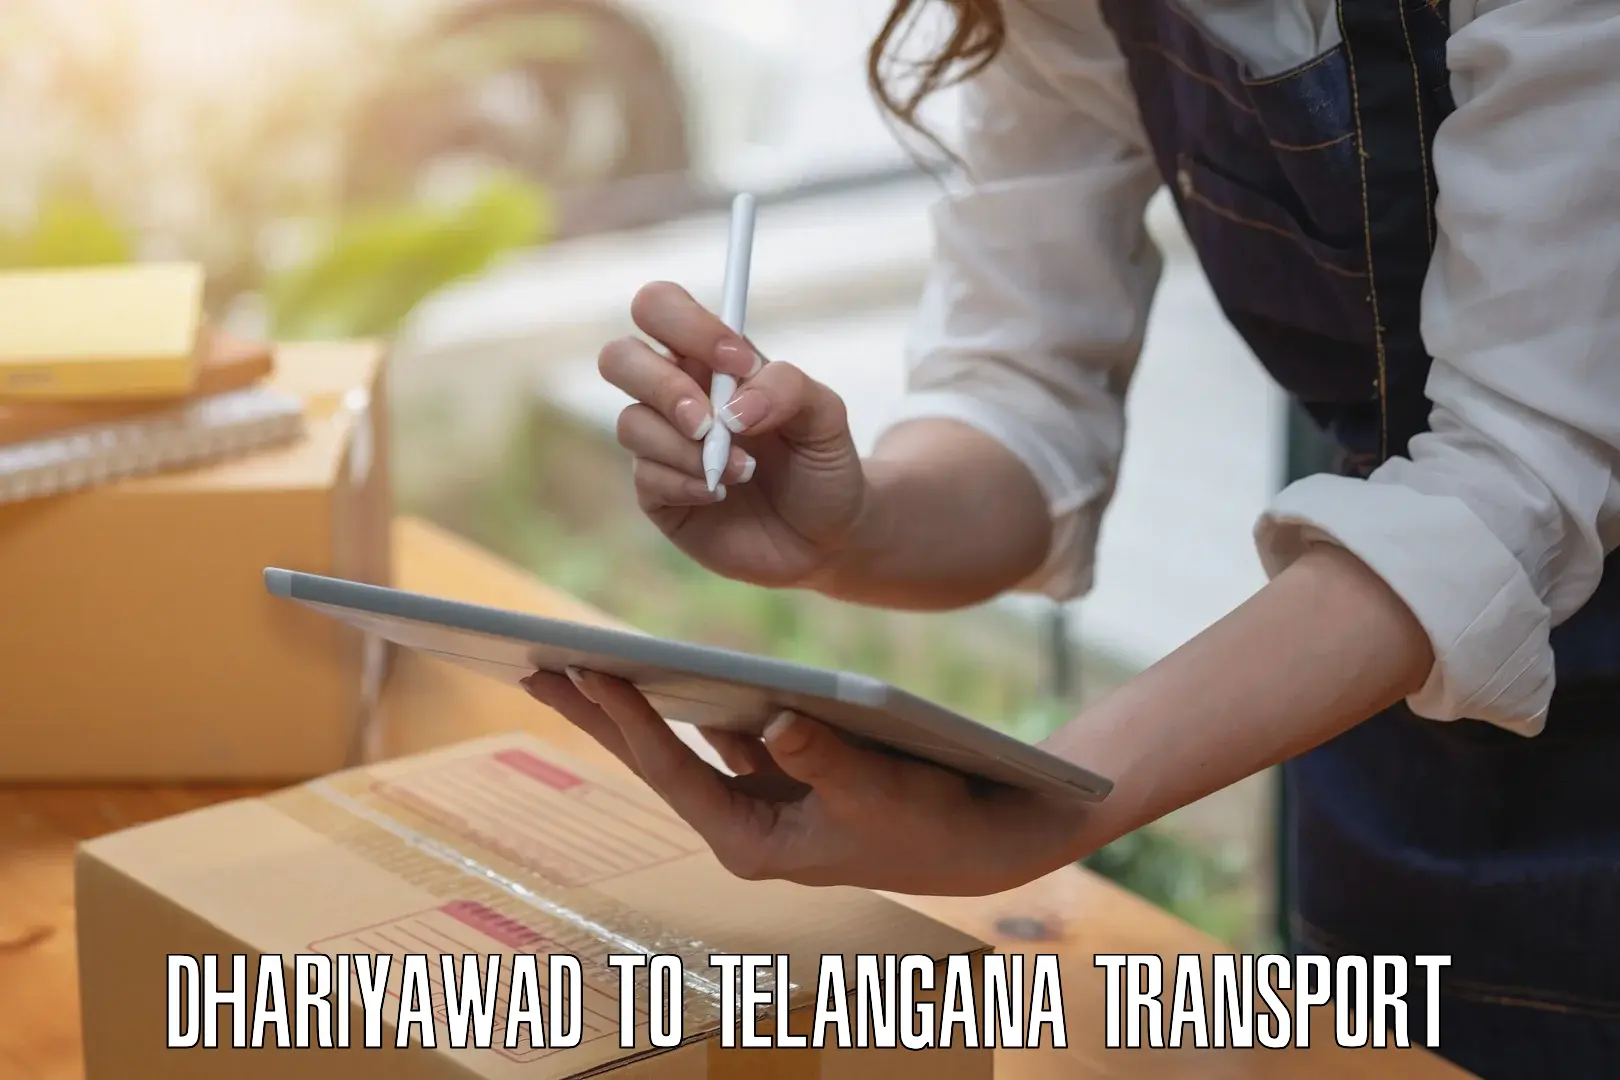 Furniture transport service Dhariyawad to Kaghaznagar